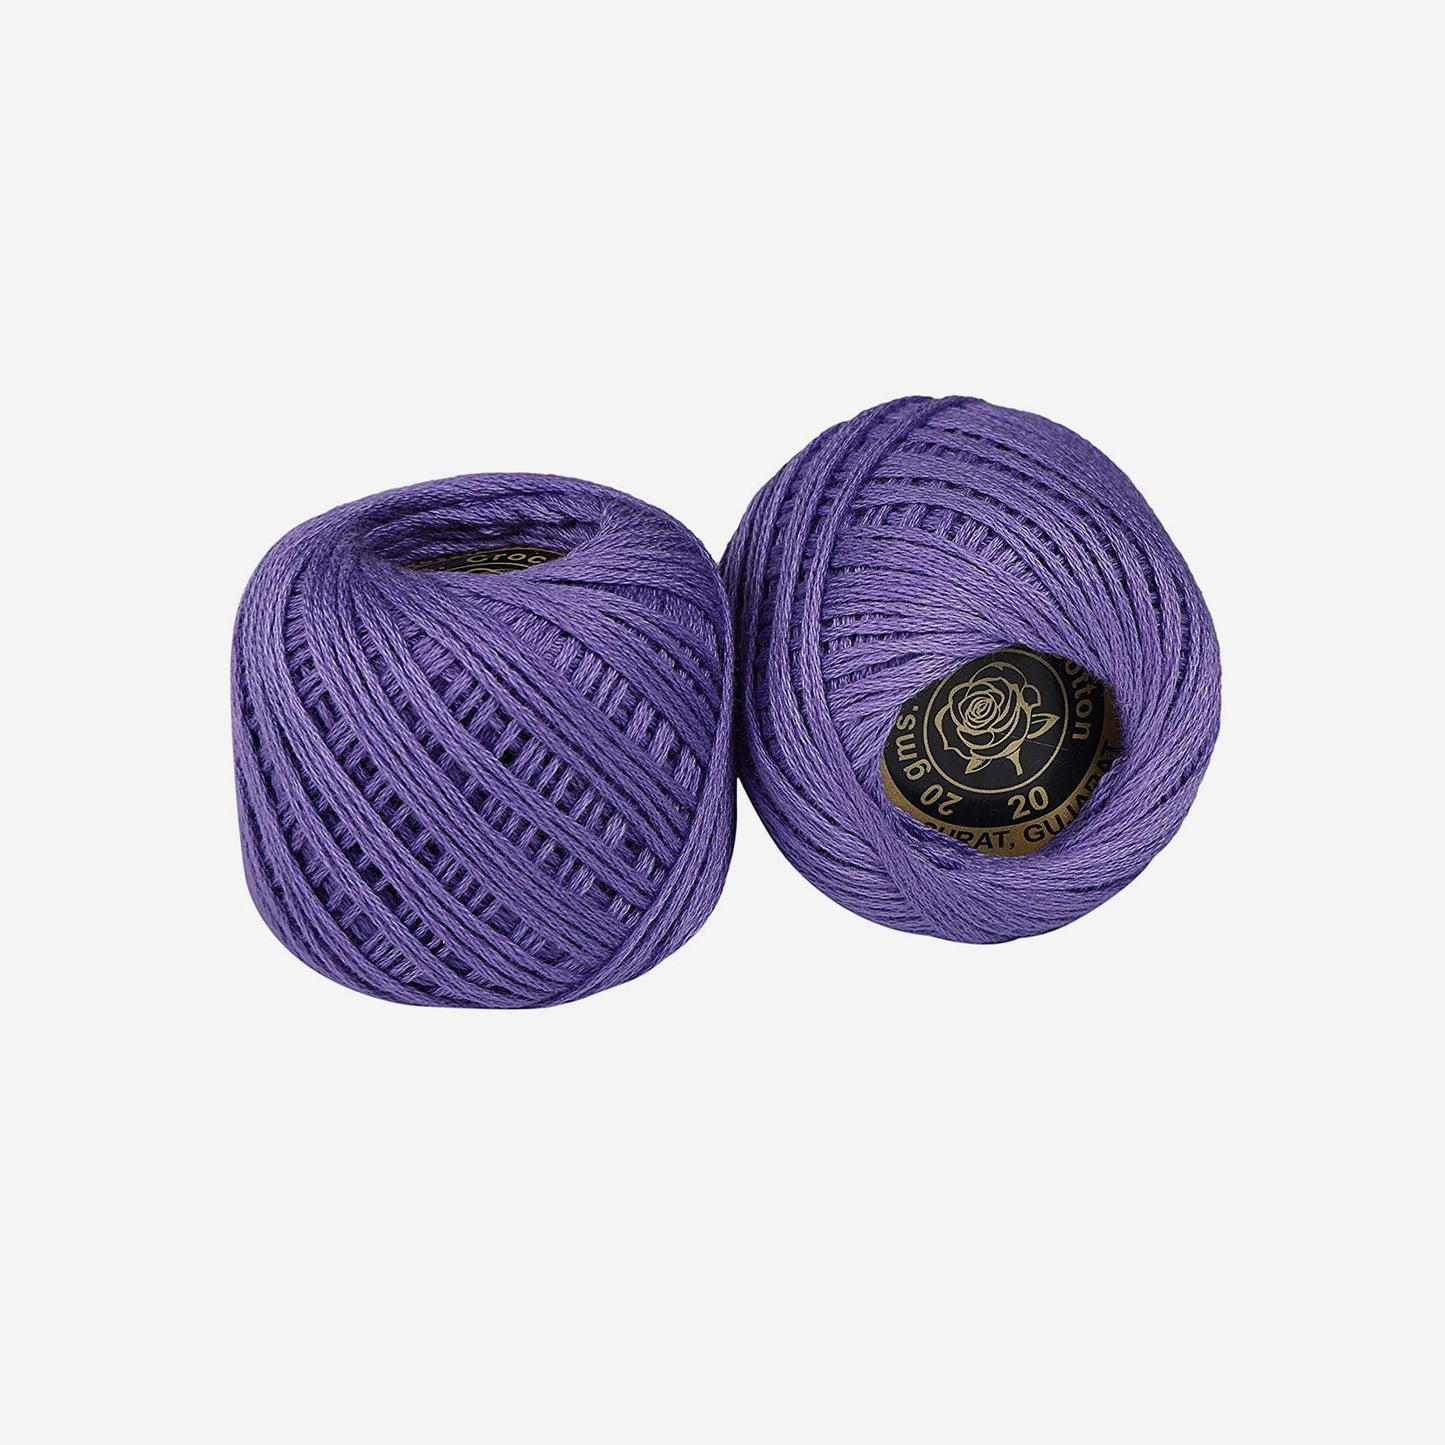 Hand-crochet hoops (Variation 13)